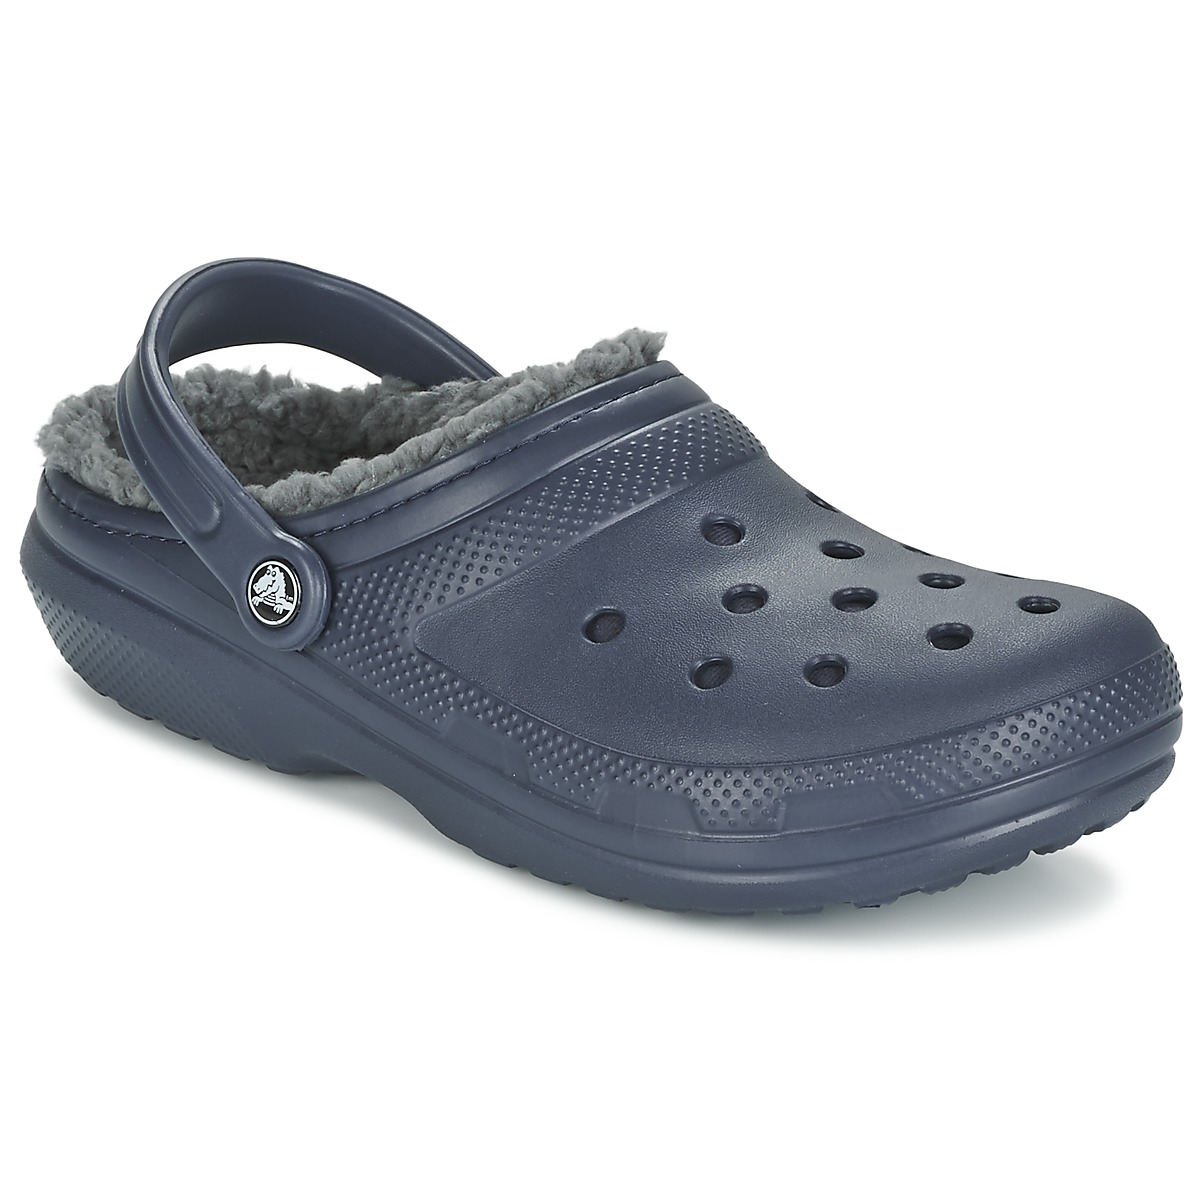 Crocs - Classic Lined - Sportieve slippers - Heren - Maat 48 - Blauw - 459 -Navy/Charcoal